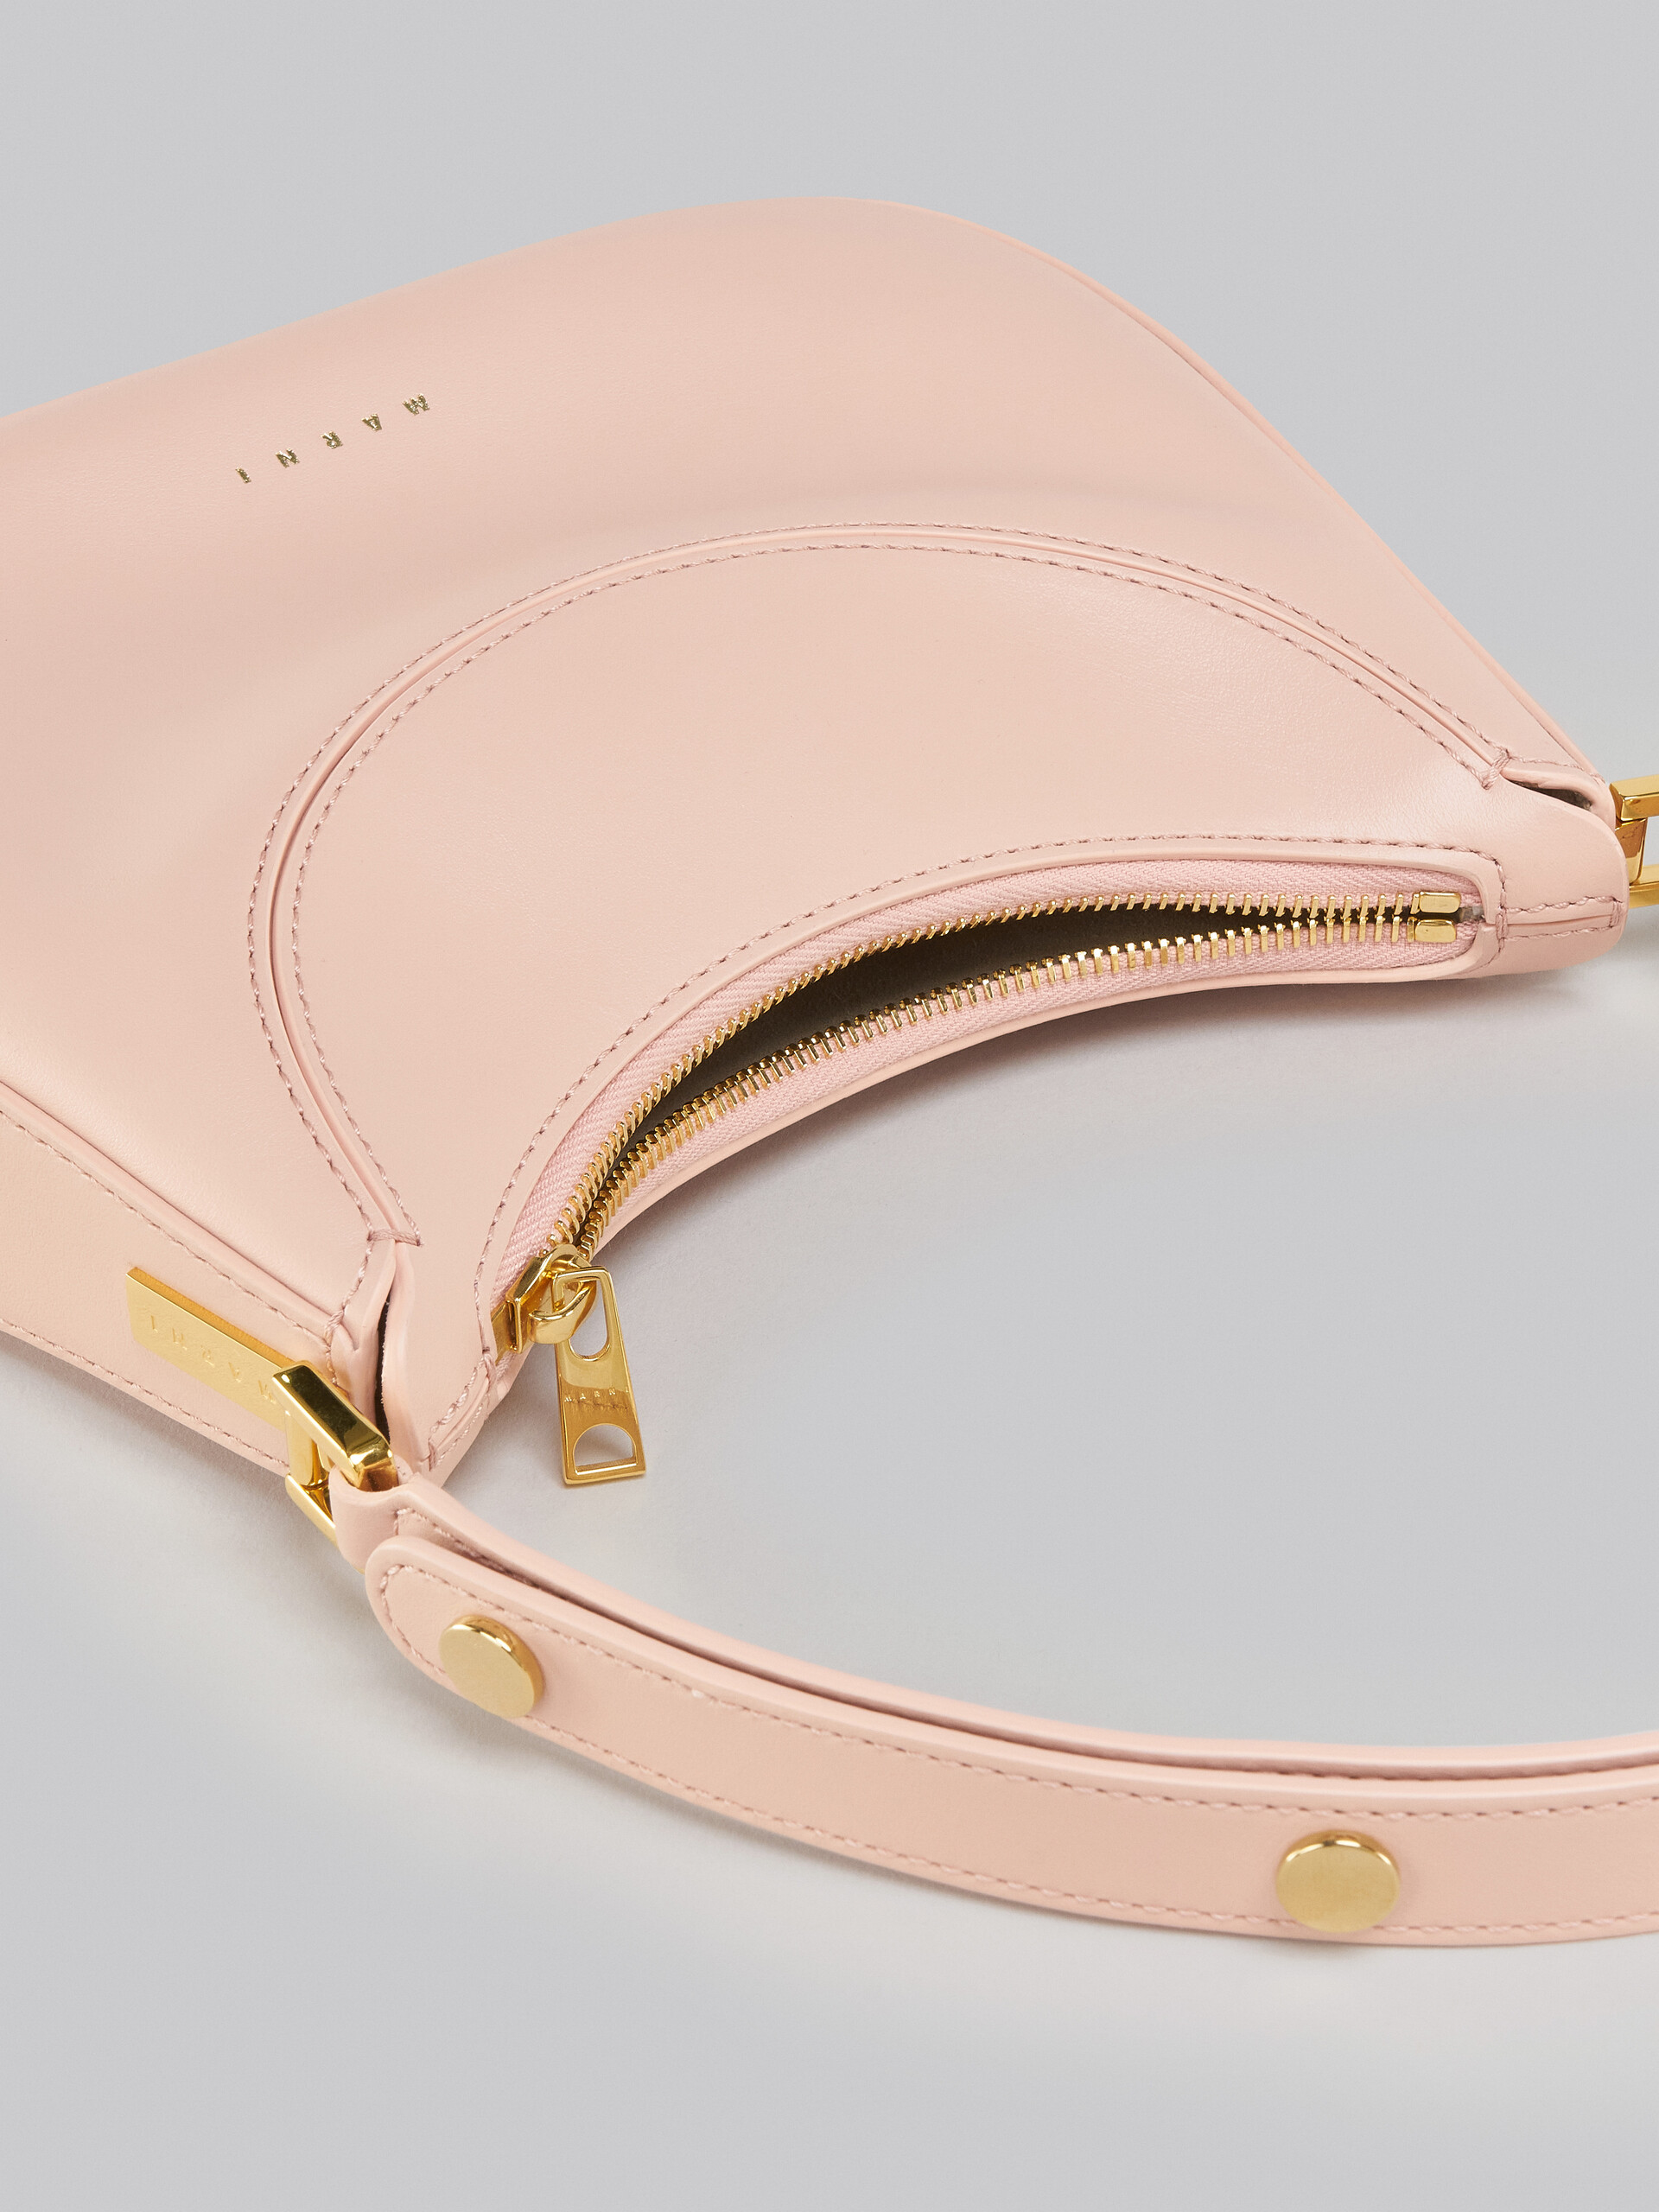 Milano Bag mini in pelle rosa - Borse a mano - Image 3